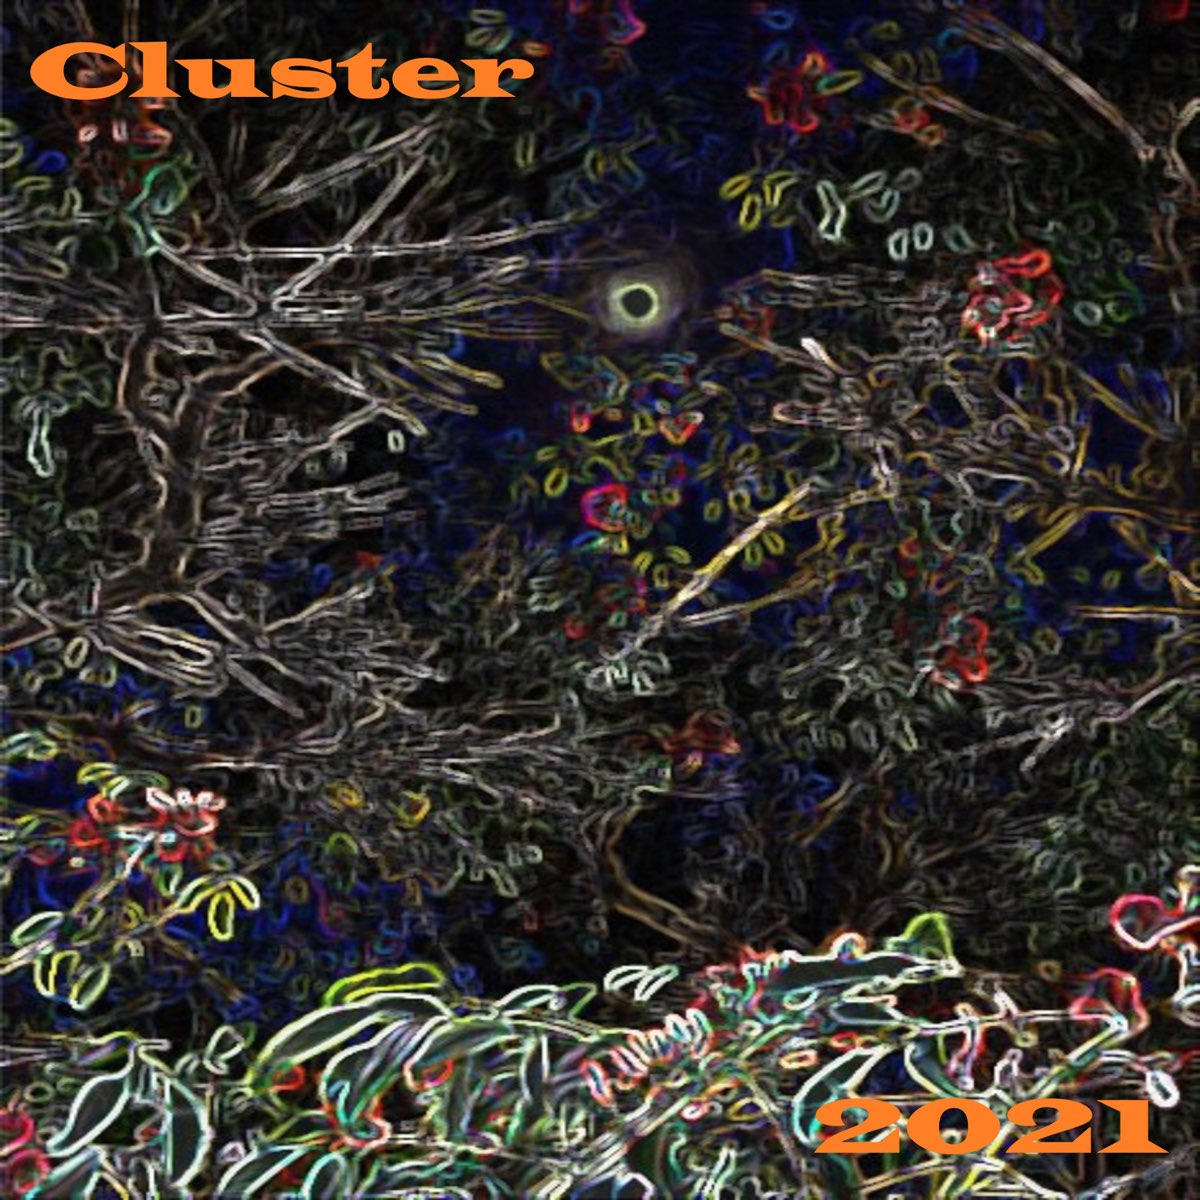 Cluster start